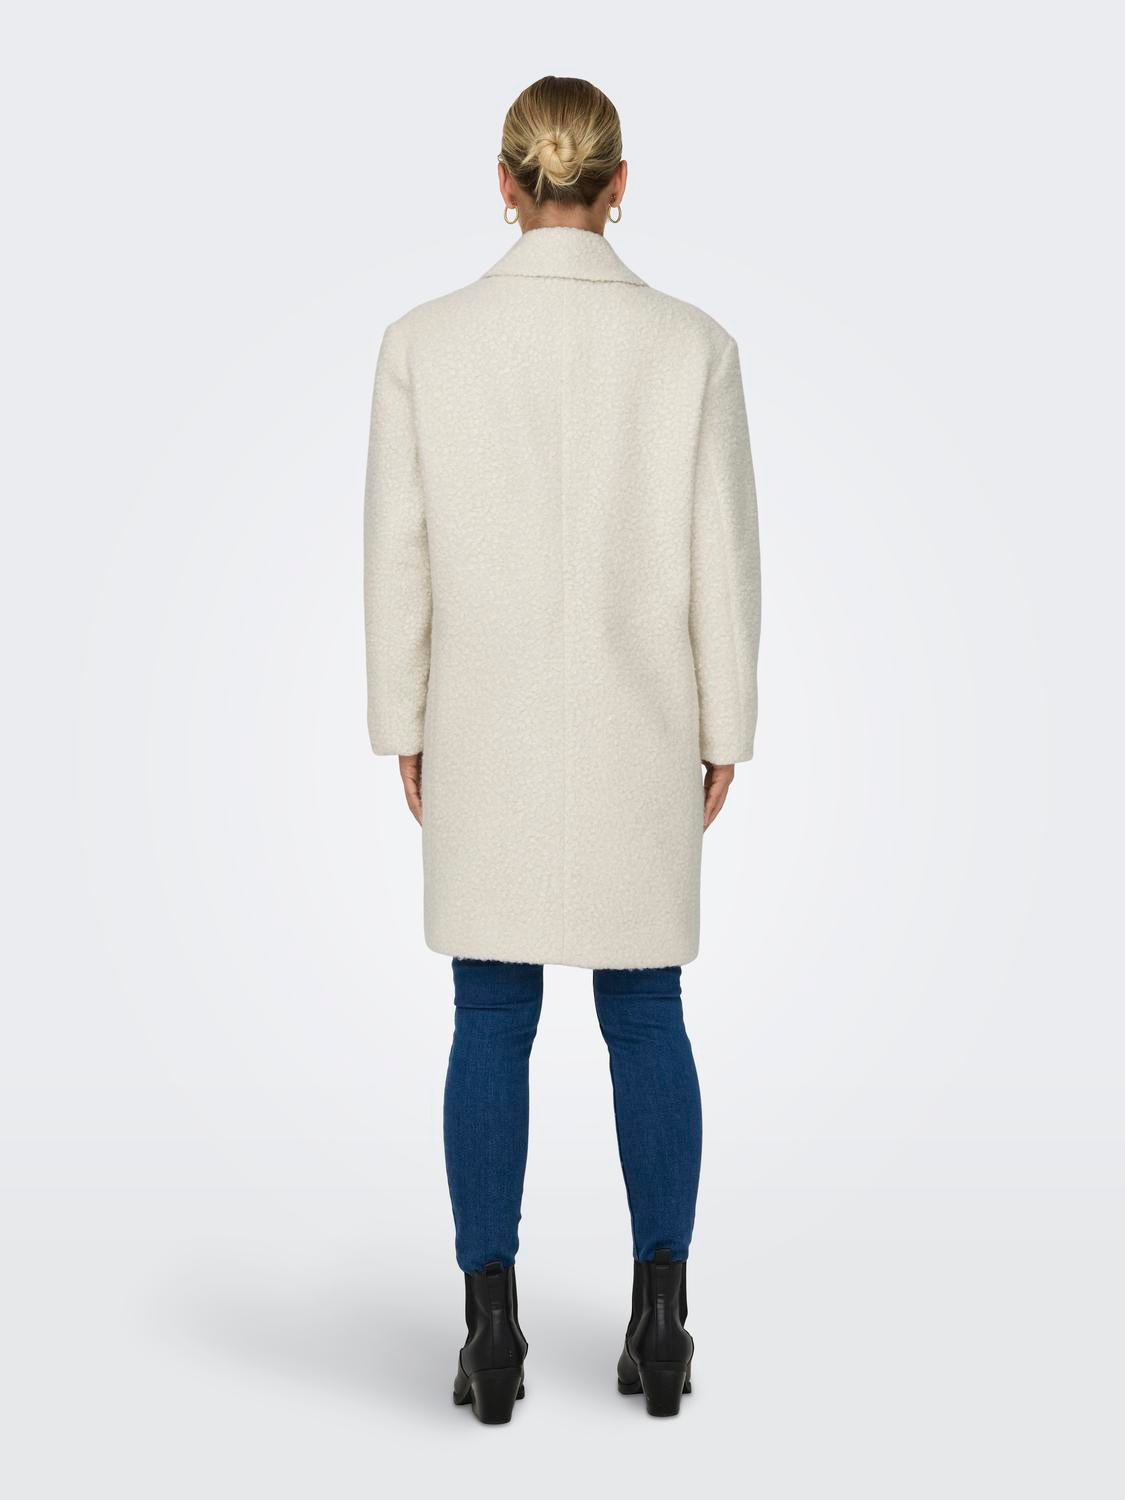 ONLY Sherpa coat -Whisper White - 15292910